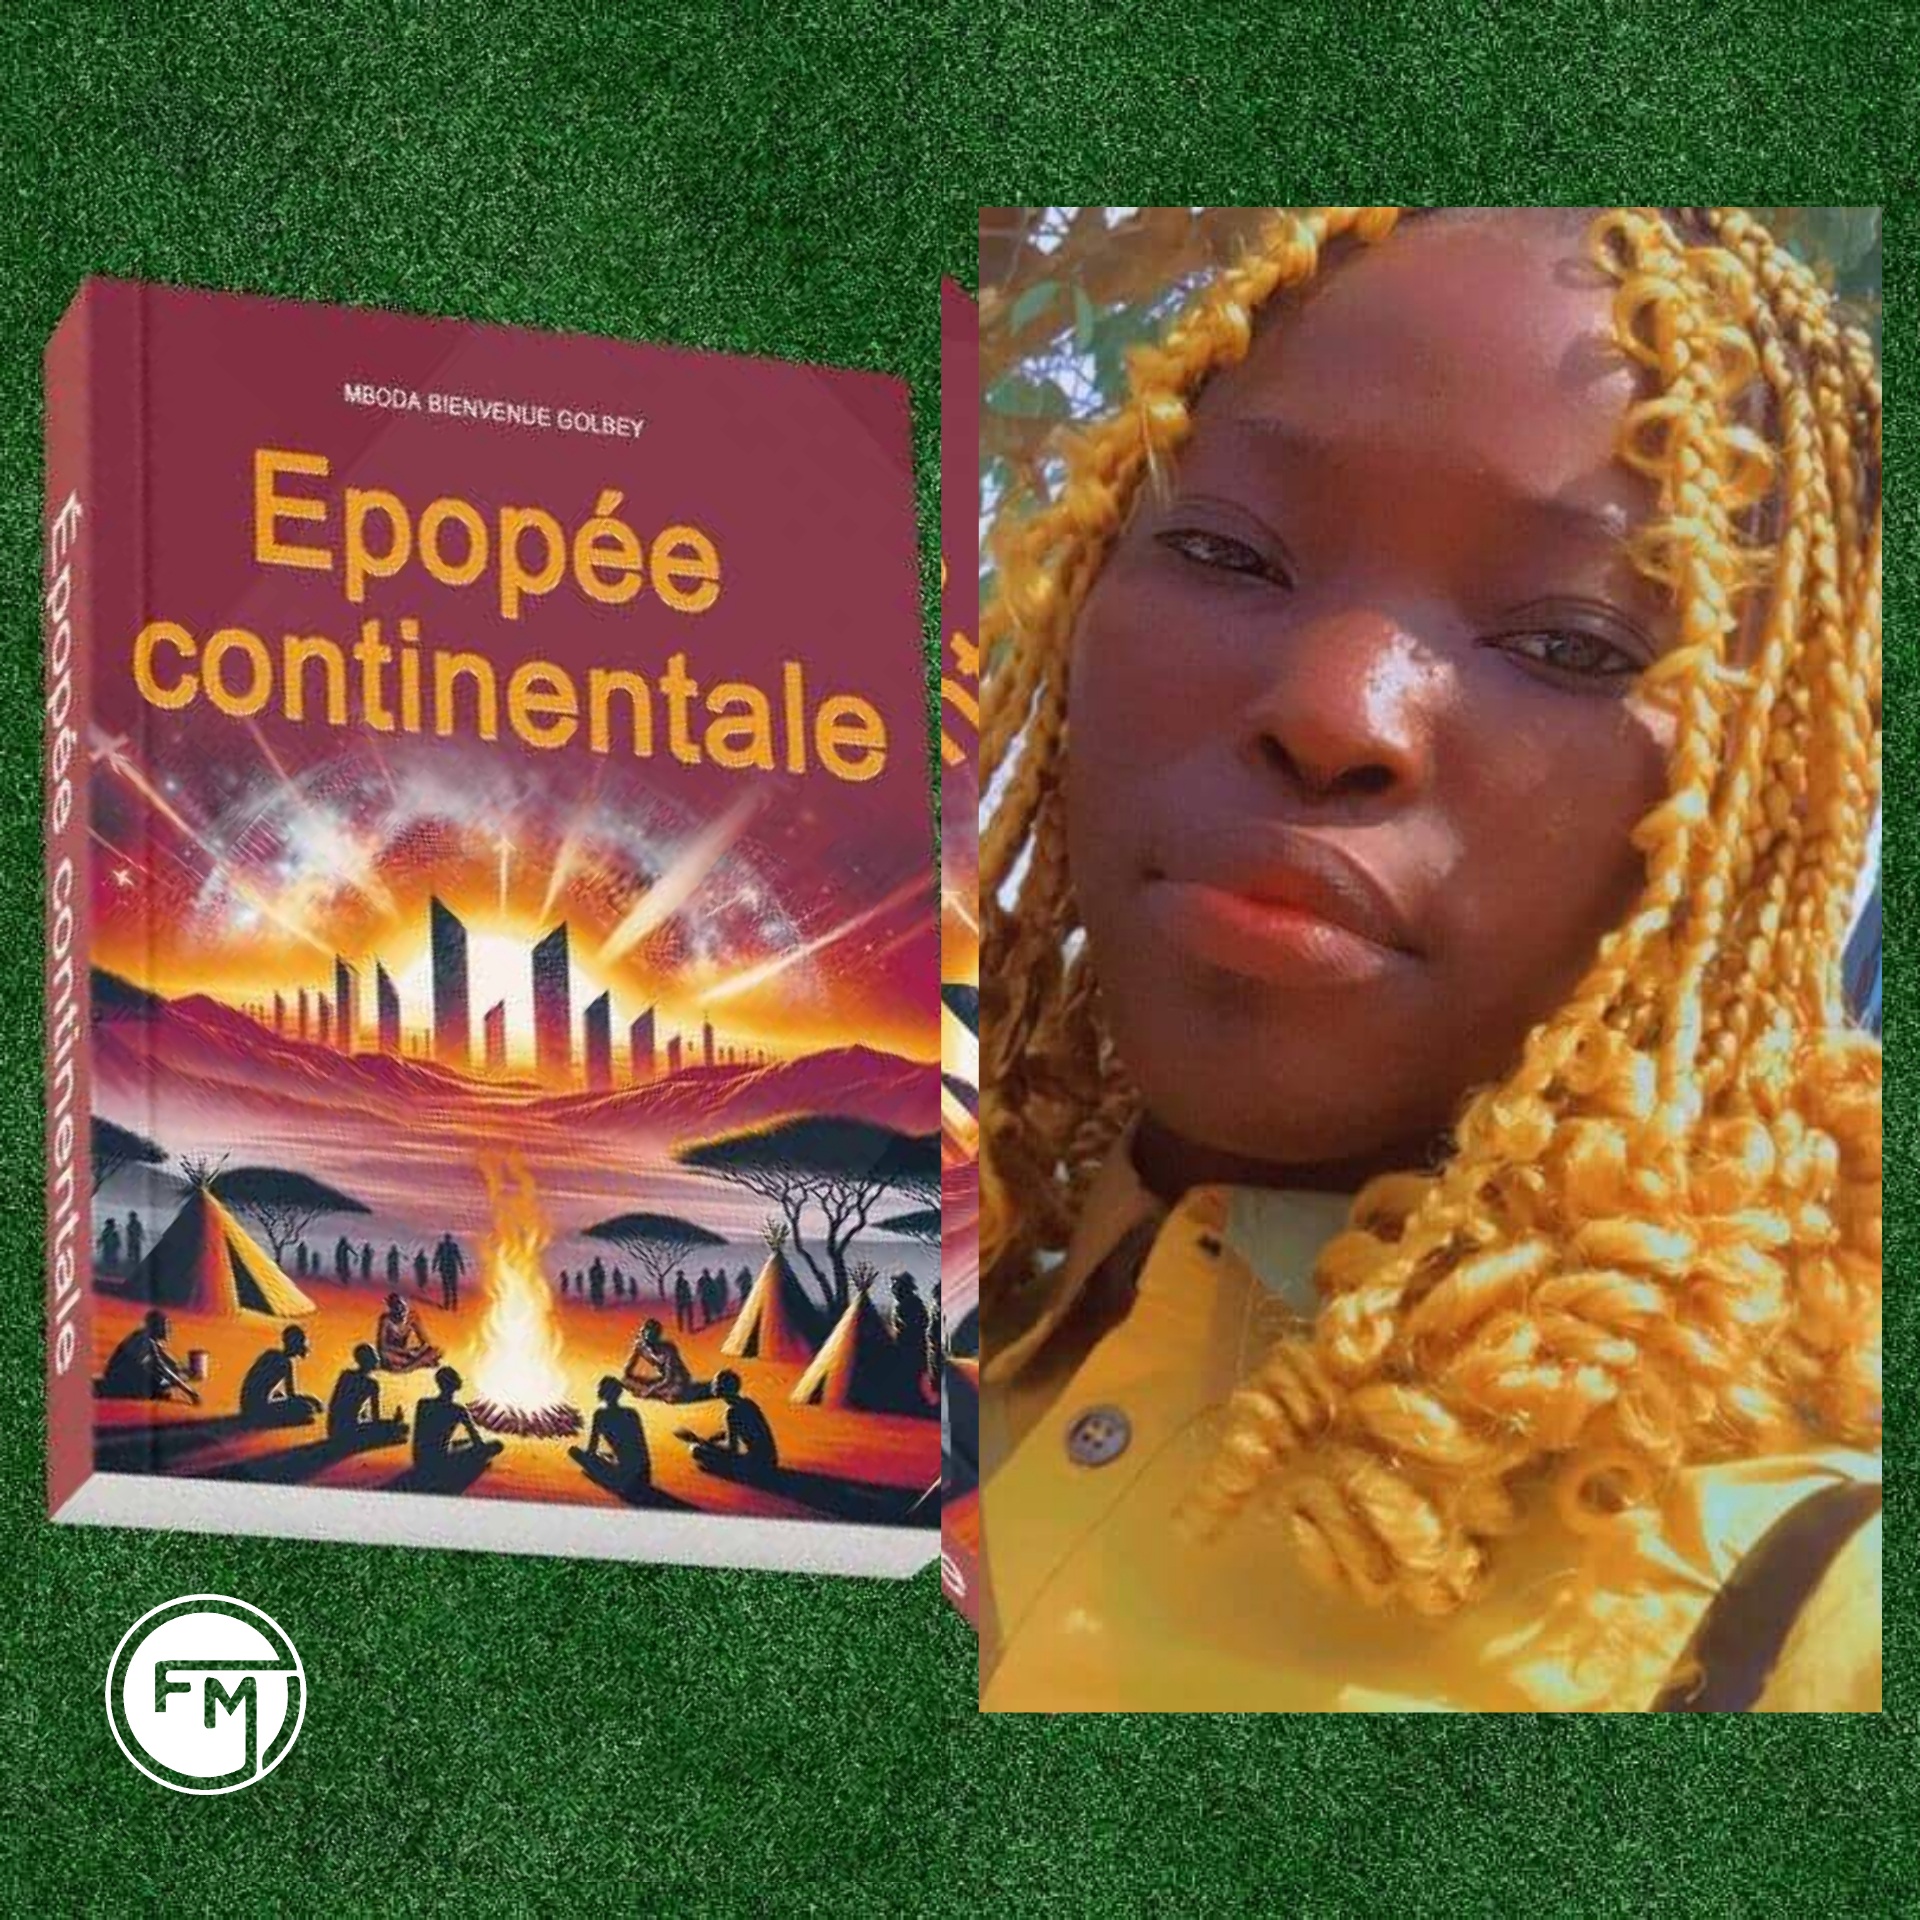 Portrait : Qui est Mboda Bienvenue Golbey, l’auteure du roman « Épopée continentale » ?